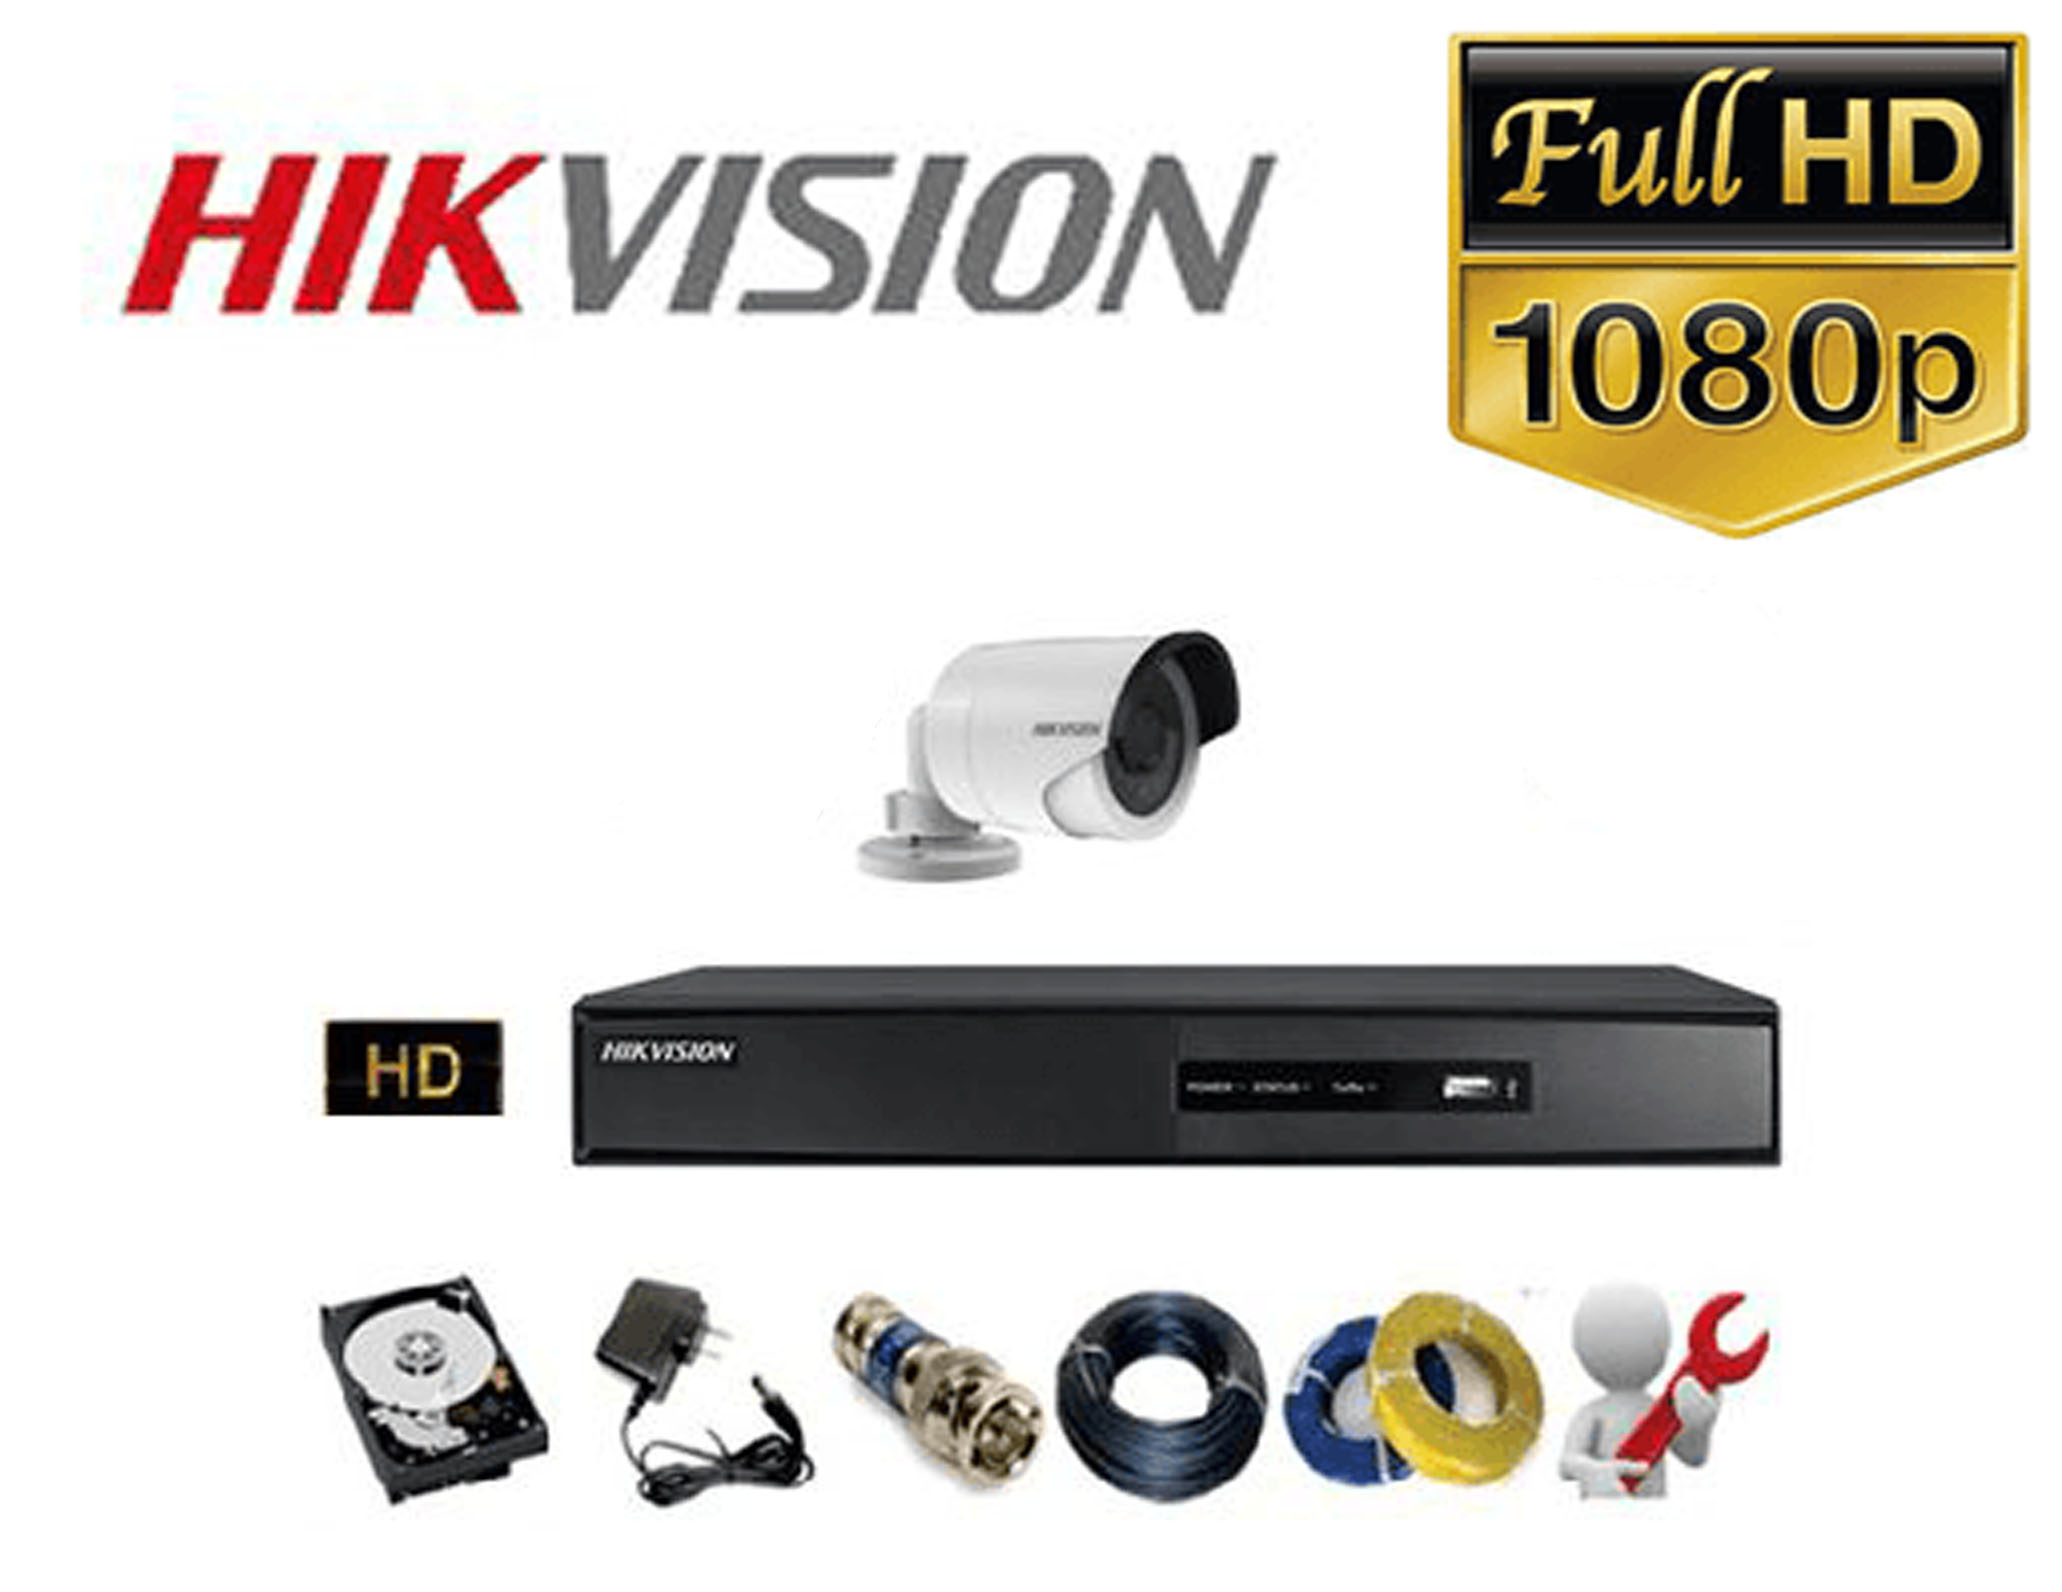 Lắp đặt trọn gói 01 bộ Camera HIKVISION Full HD 1080